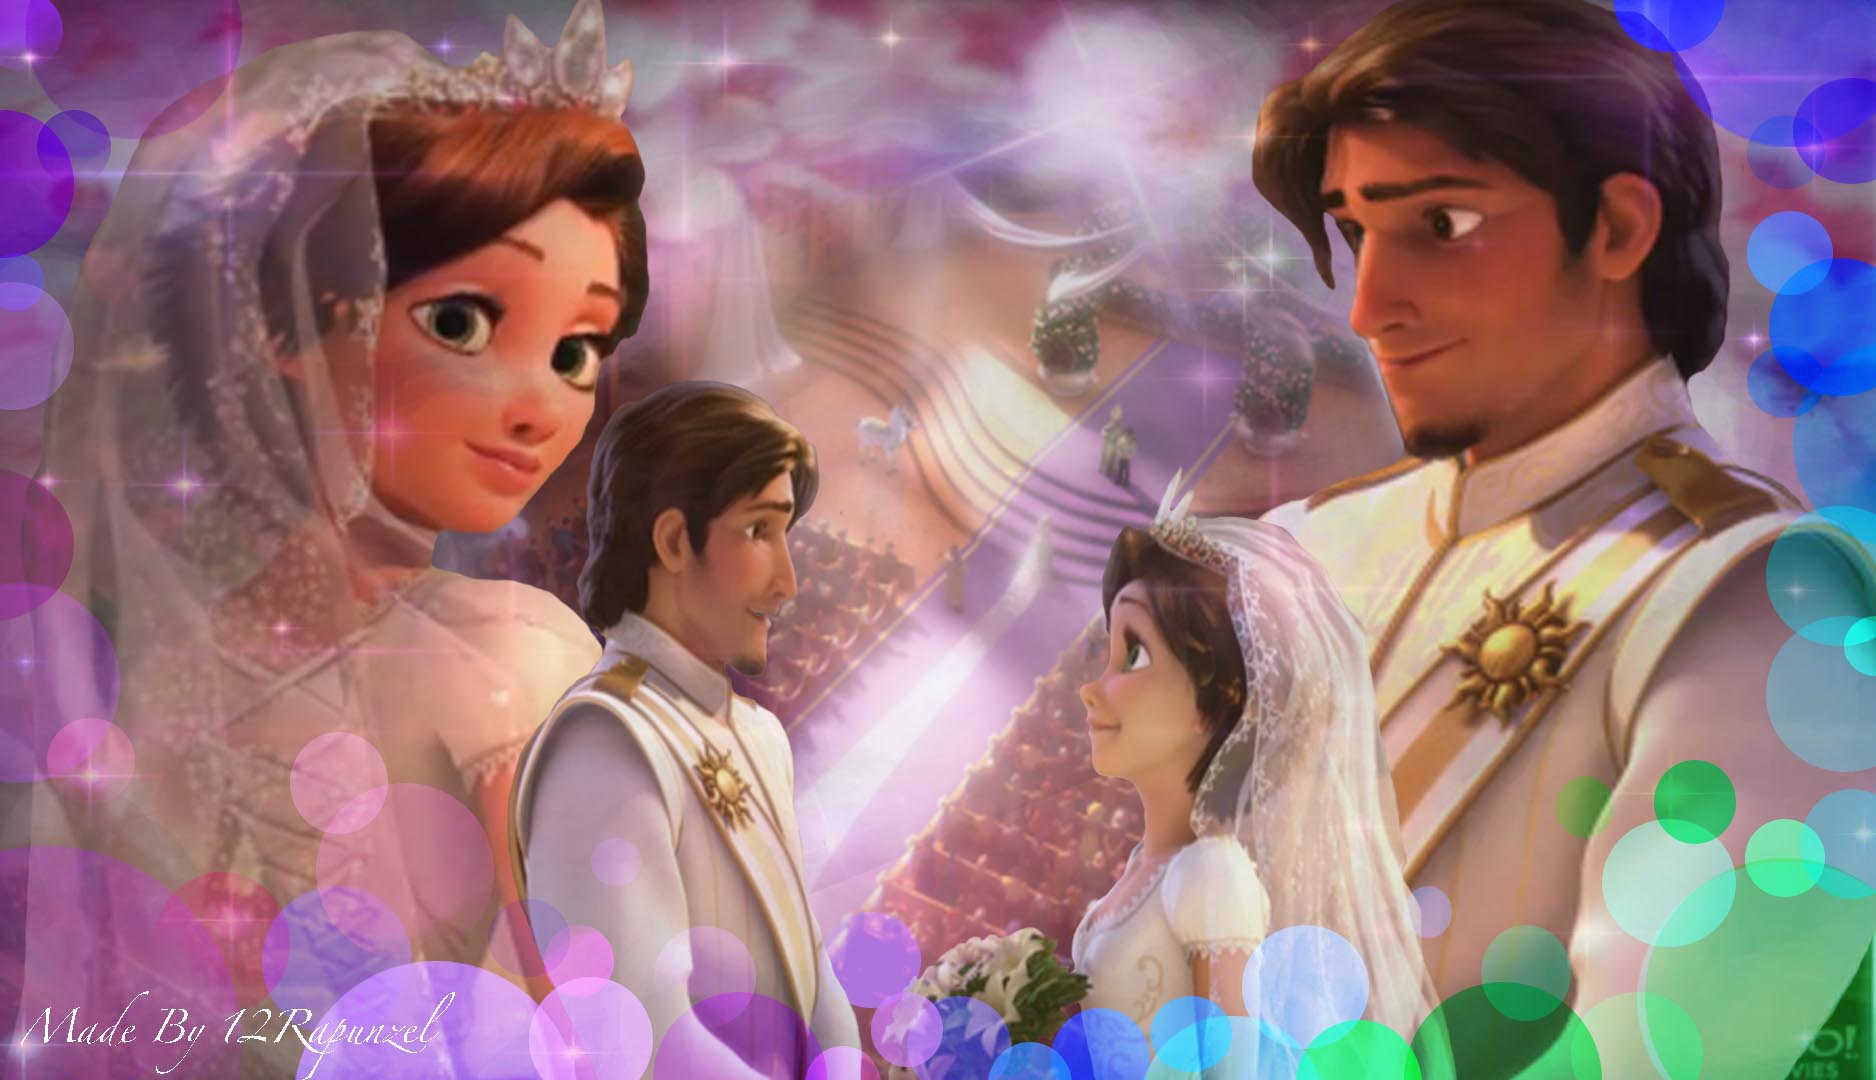 Rapunzel and Flynn wedding